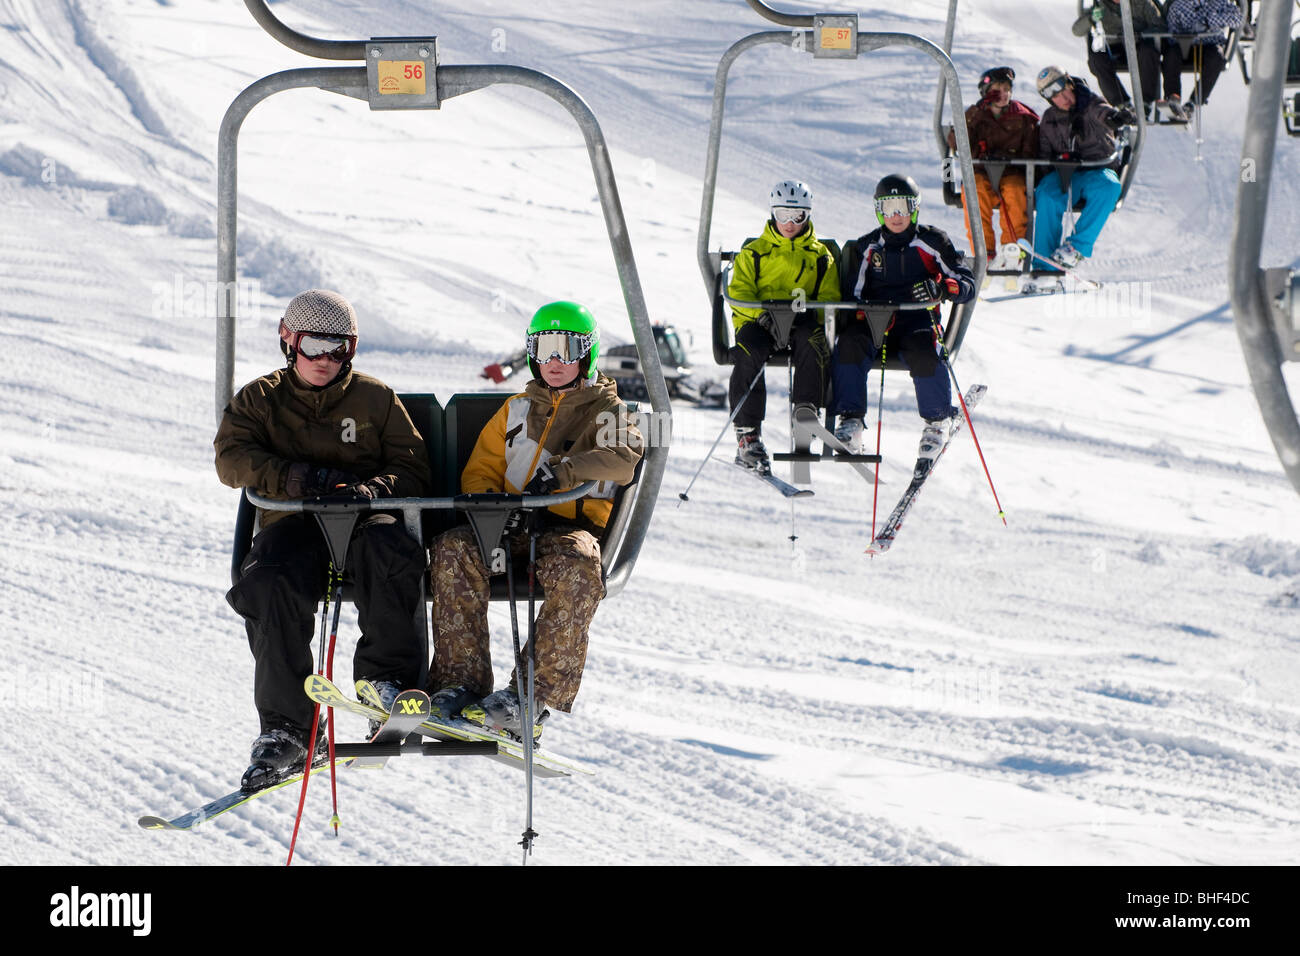 young skiers on ski chair lift, kitzbuhel, austria Stock Photo